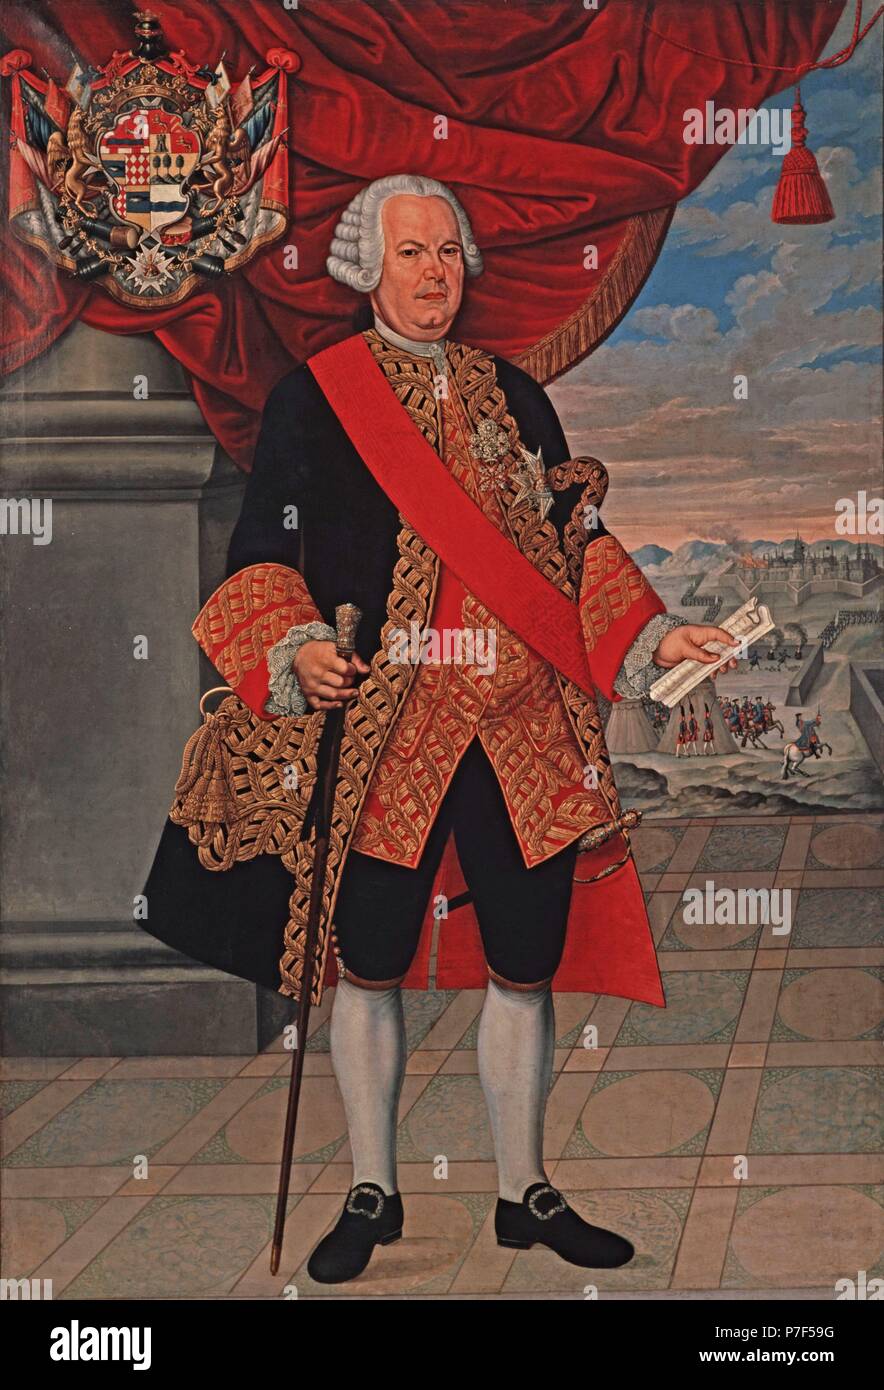 Retrato de Manuel de Amat y Junyent (1704-1782). Militar español. Gobernador y presidente de la Audiencia de Chile (1755-1761) y virrey de Perú (1761-1776). Museo: Museu d'Art Moderne (MNAC). Foto Stock